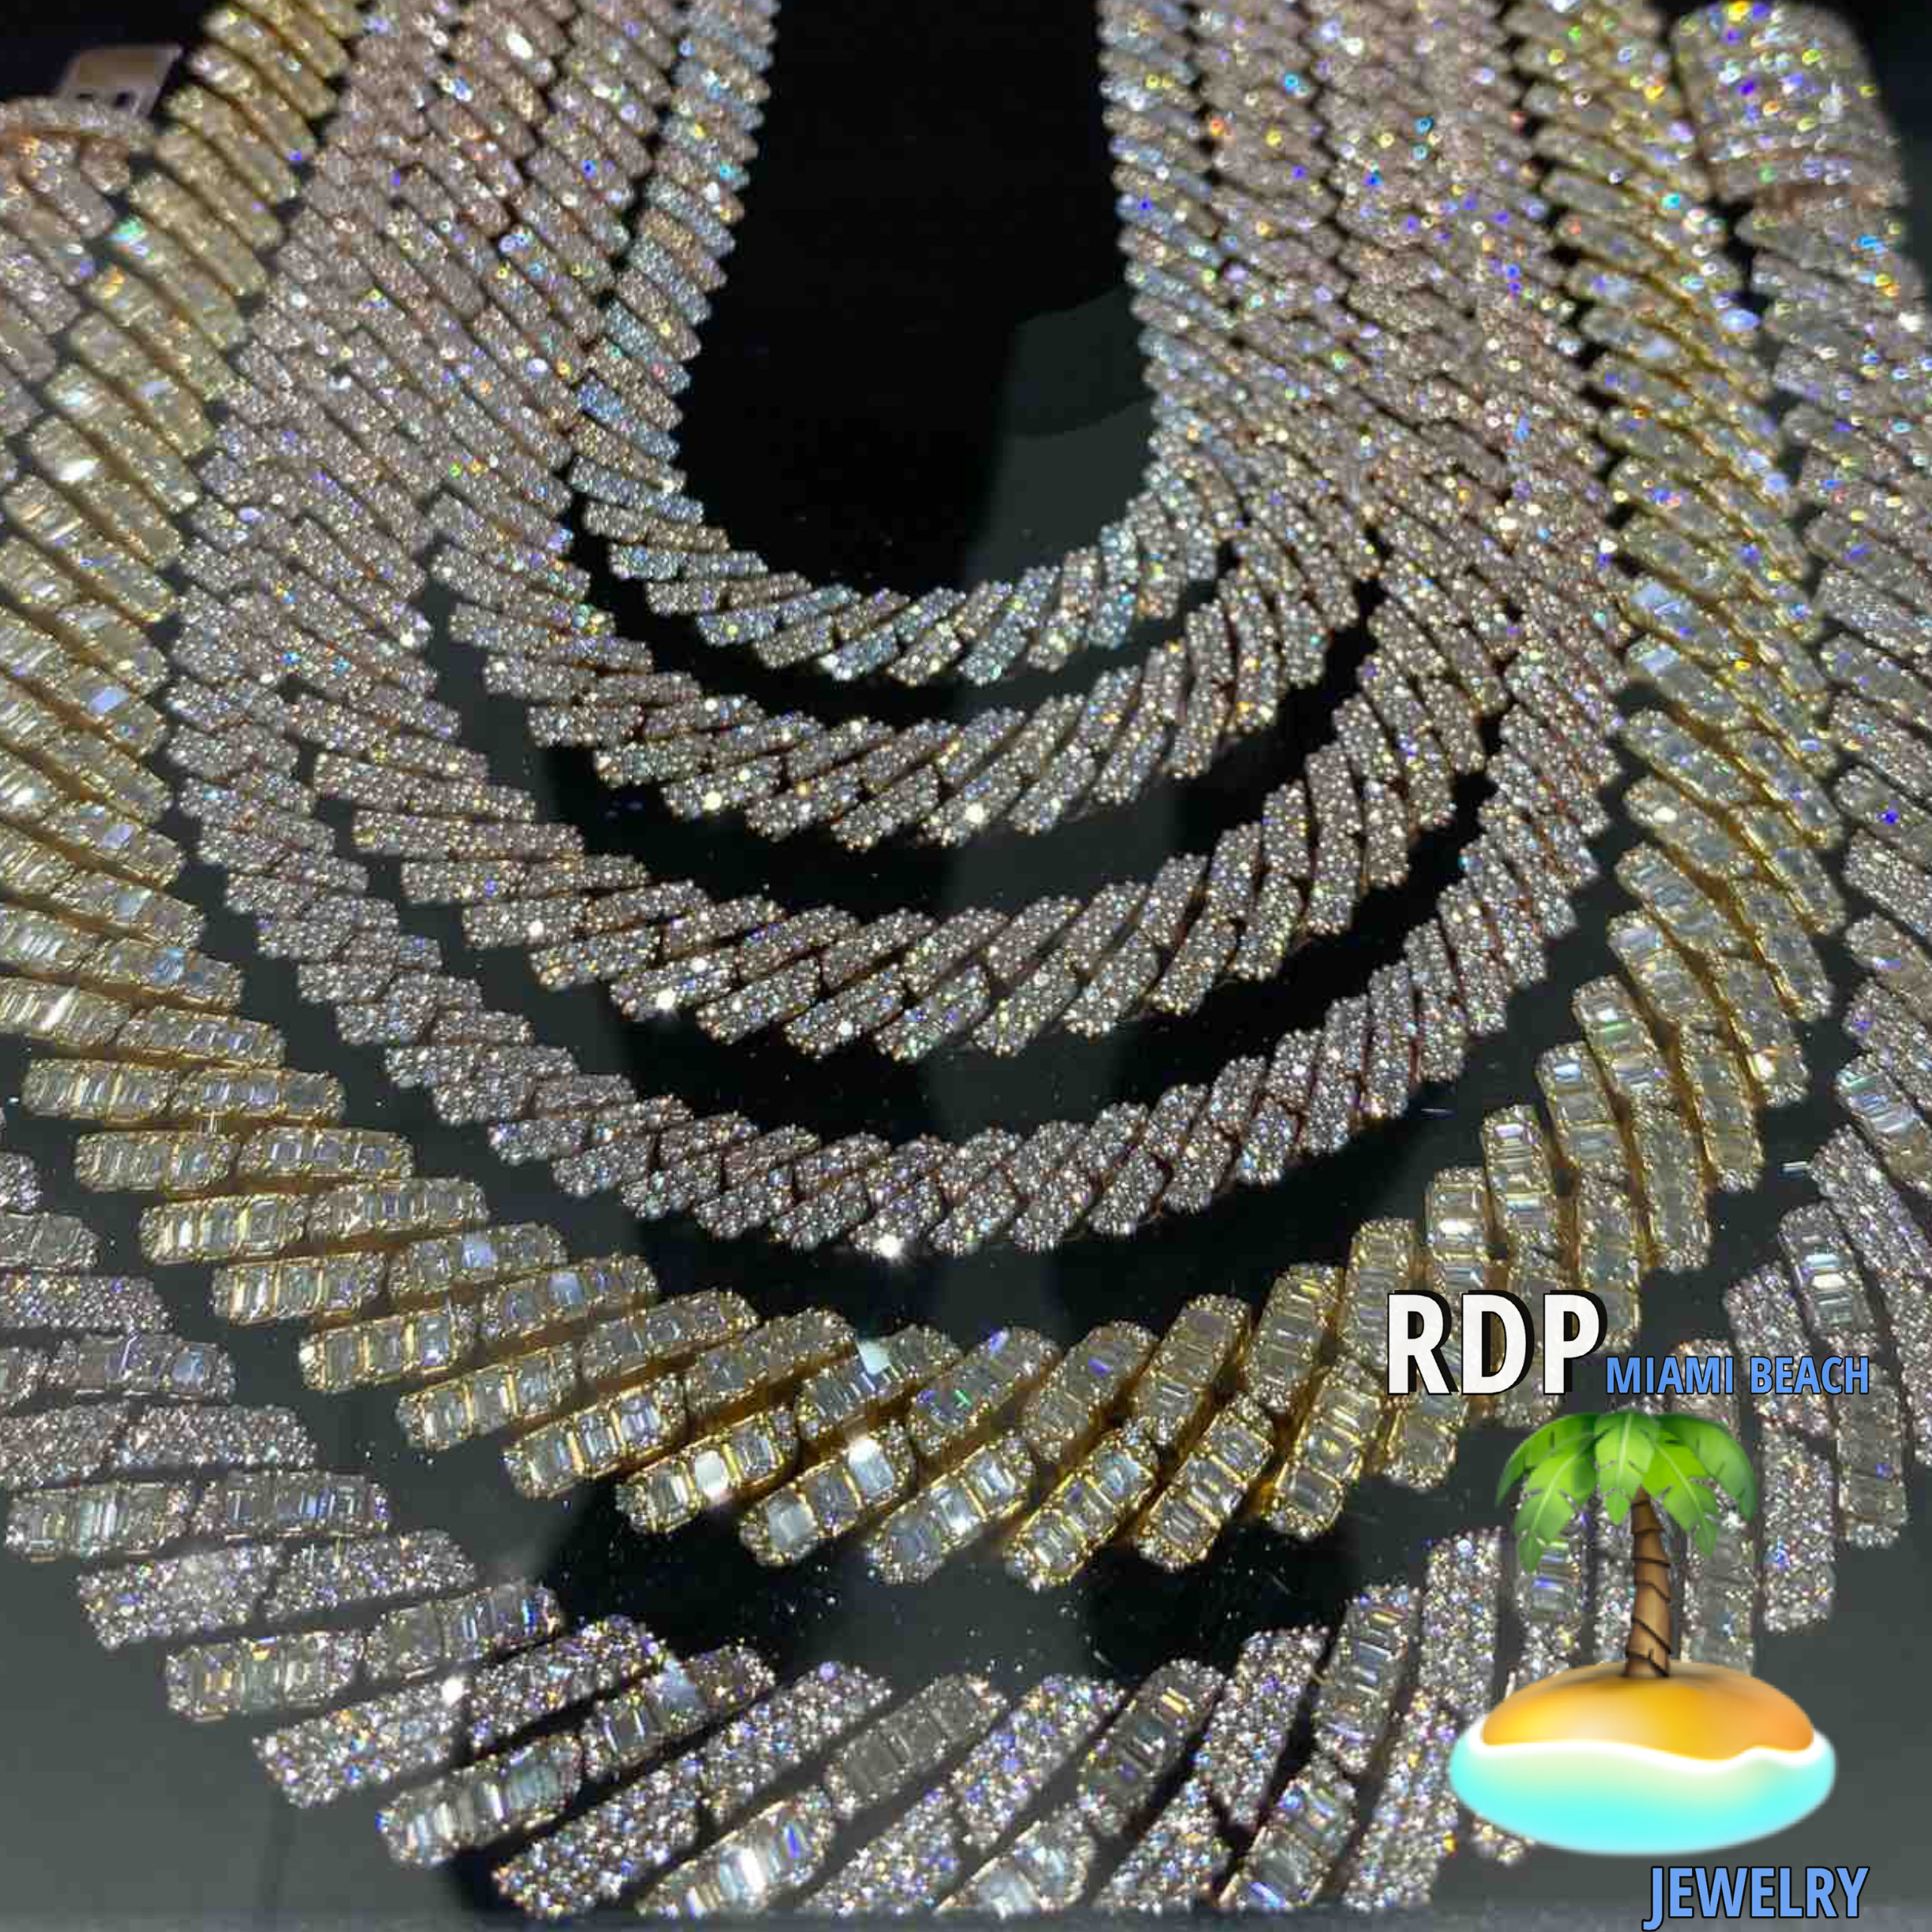 Discover the Luxurious Diamond Cuban Link Chain at RDP Miami Beach